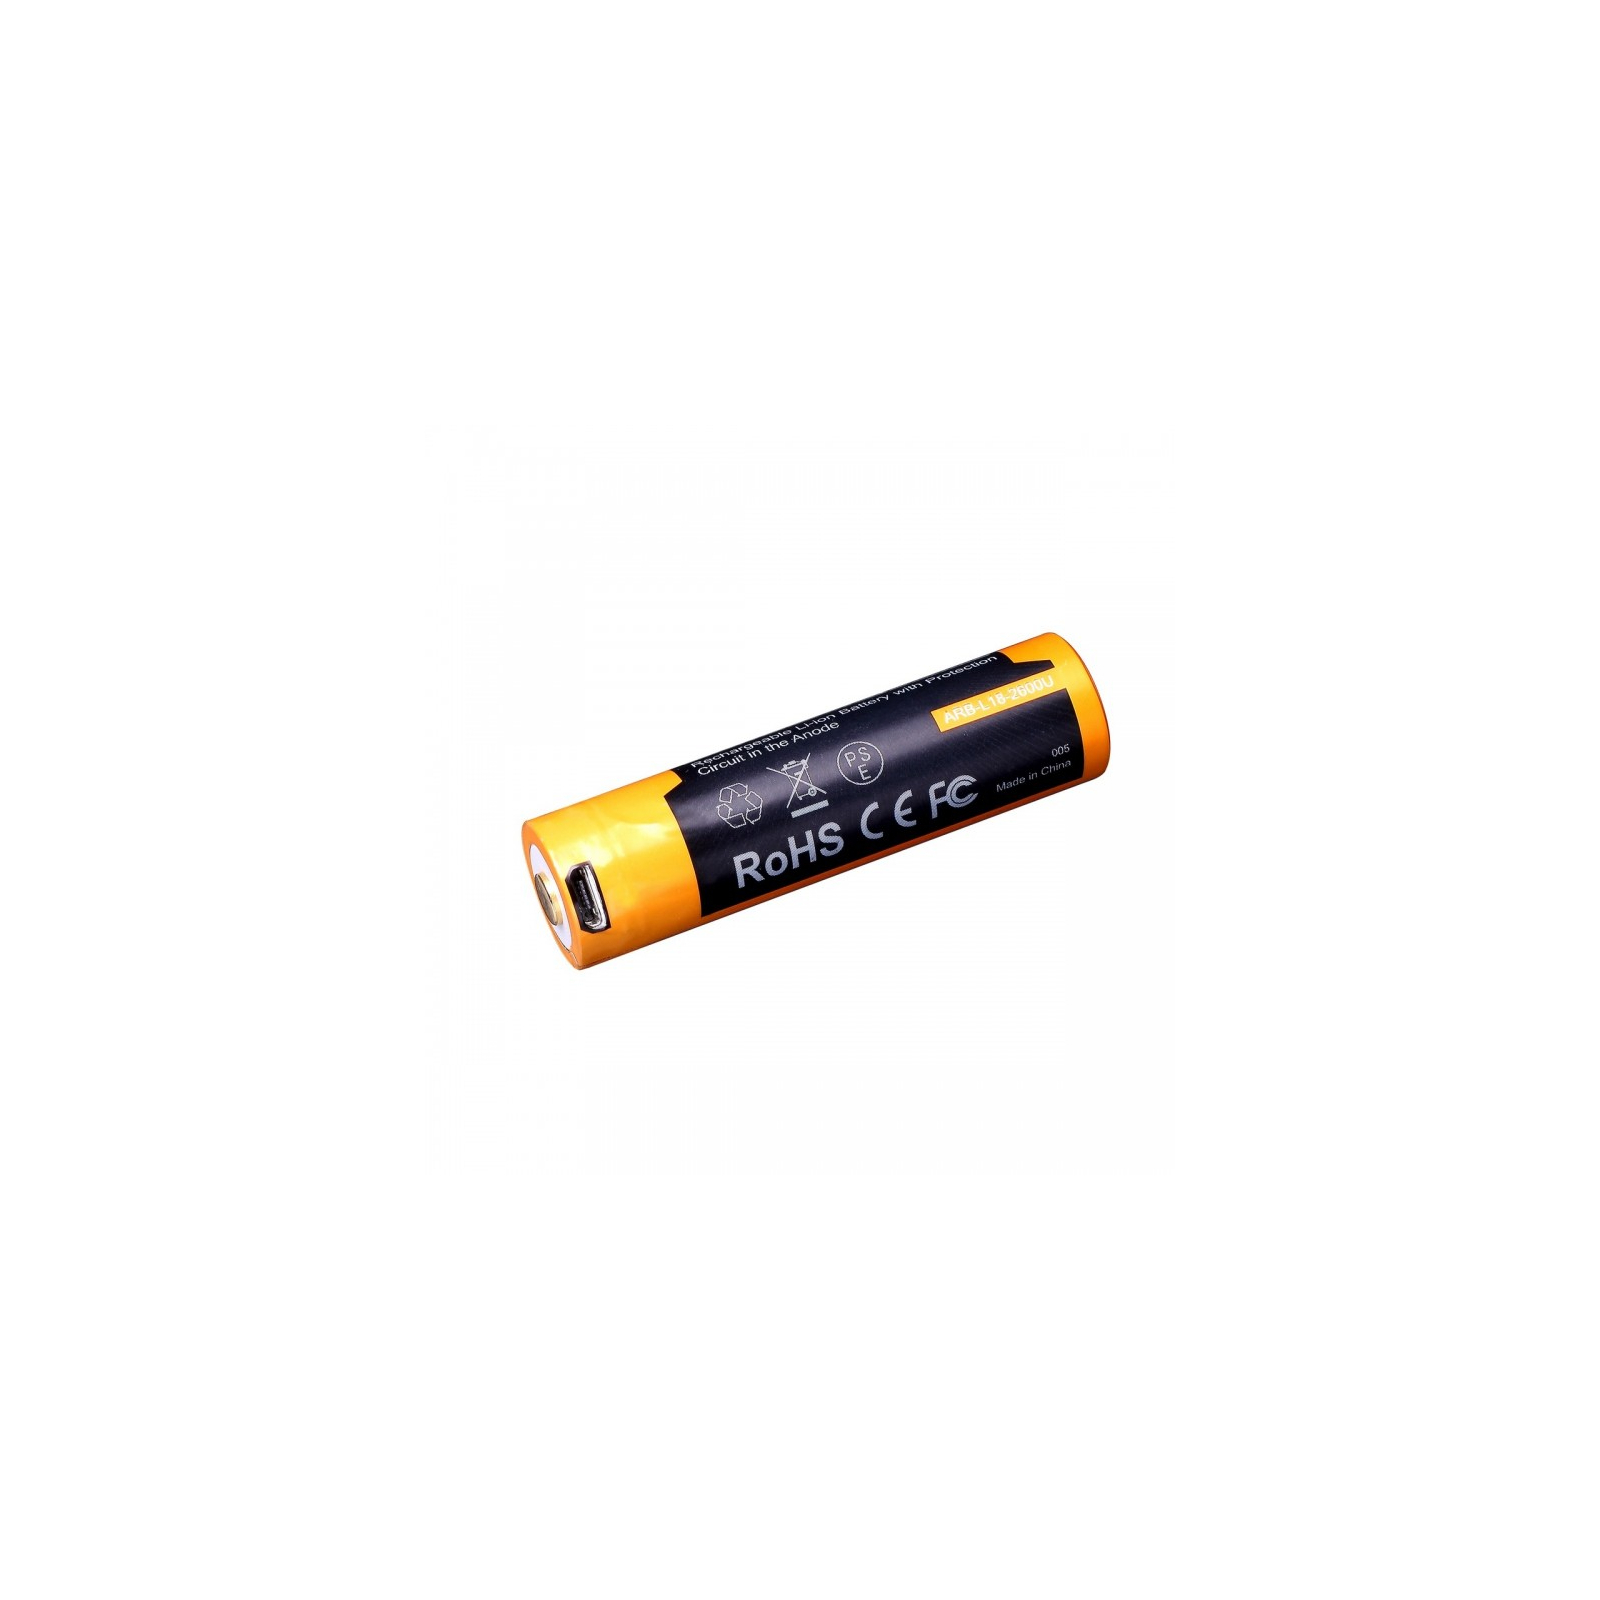 Аккумулятор Fenix 18650  2600 mAh micro usb зарядка (ARB-L18-2600U) изображение 3